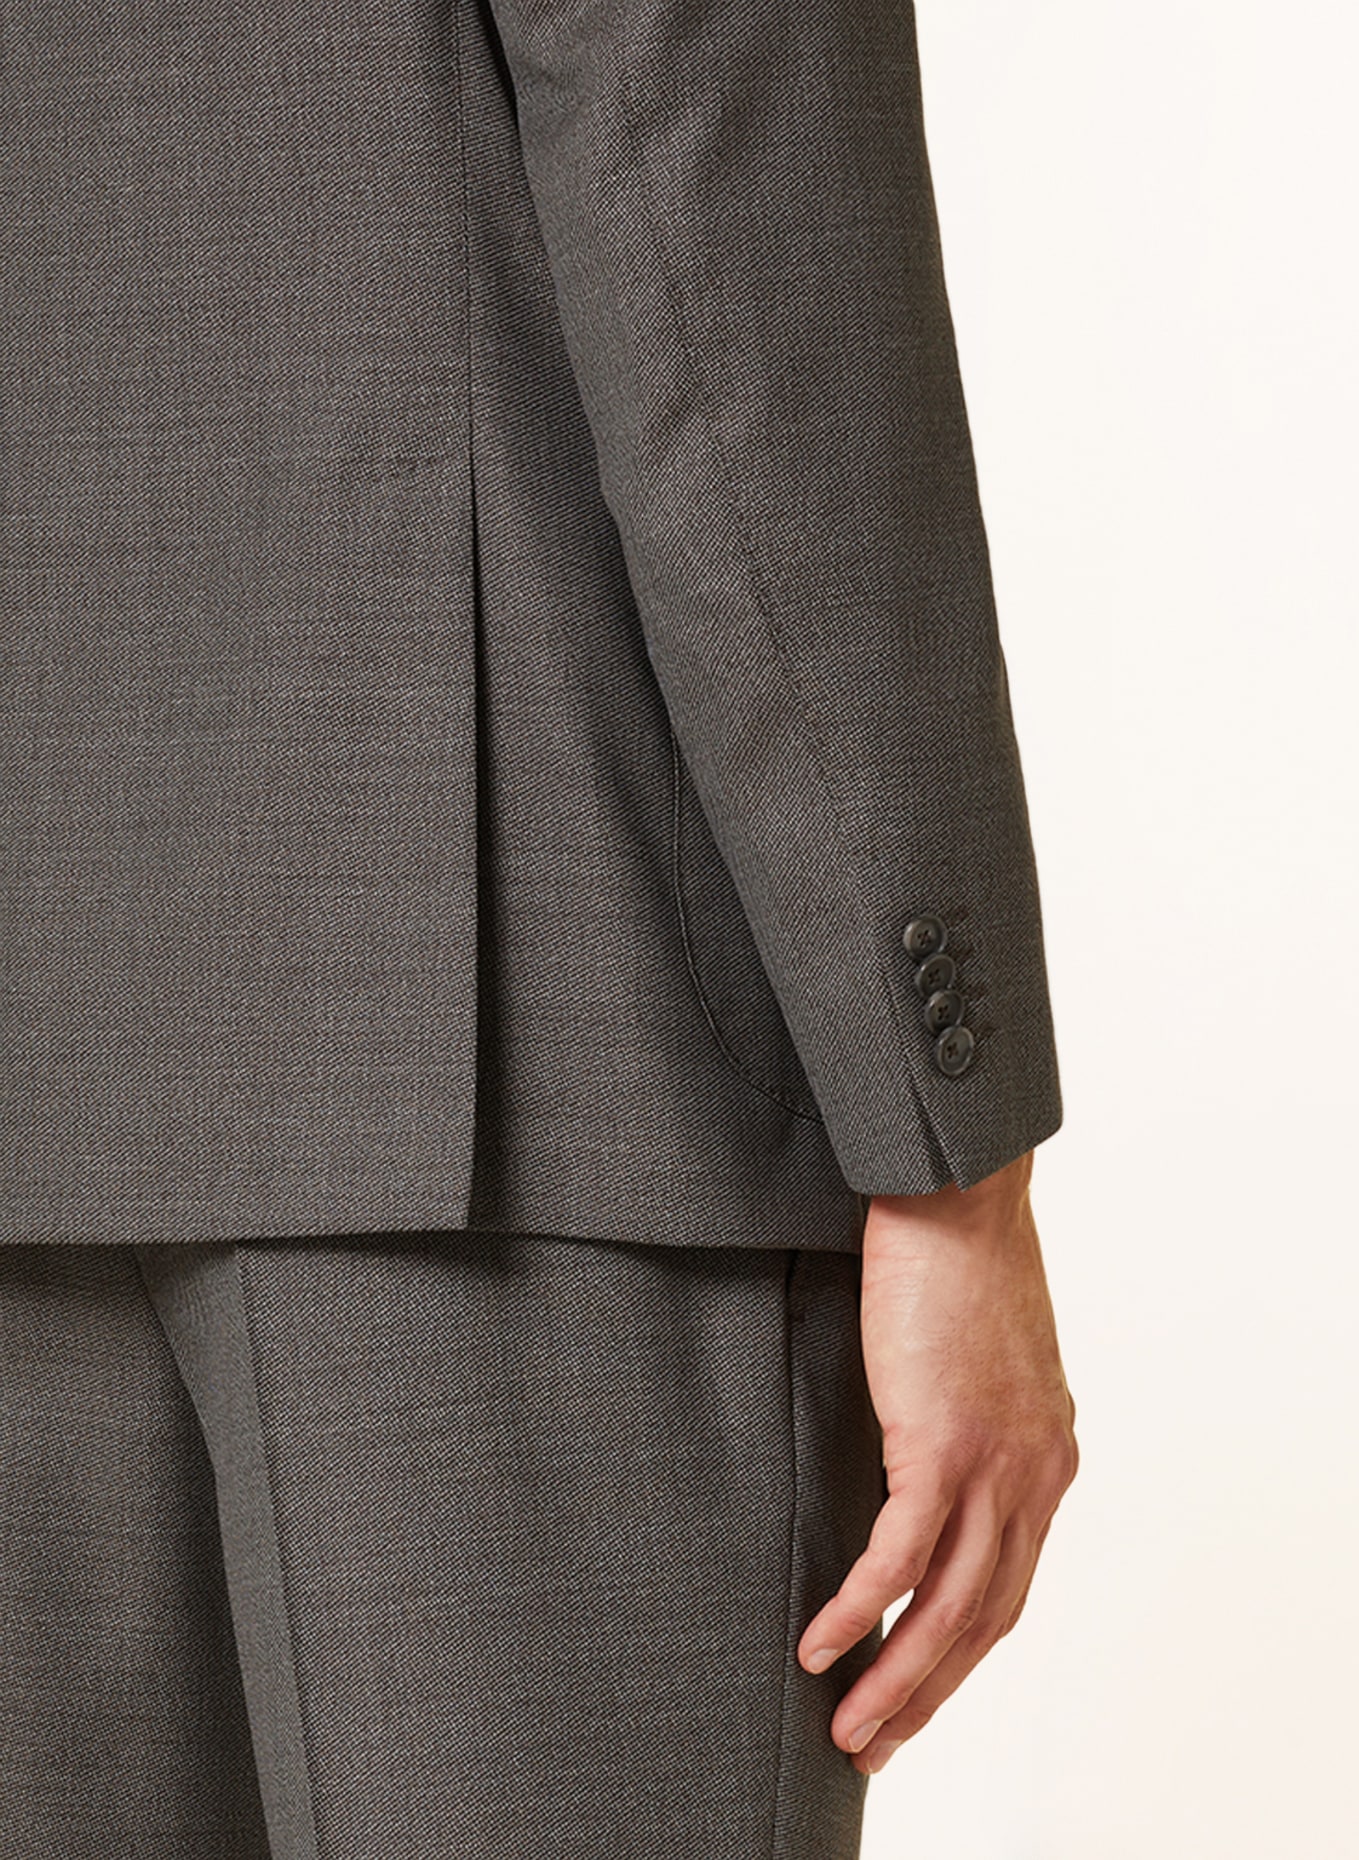 EDUARD DRESSLER Suit jacket shaped fit, Color: 084 Braun (Image 6)